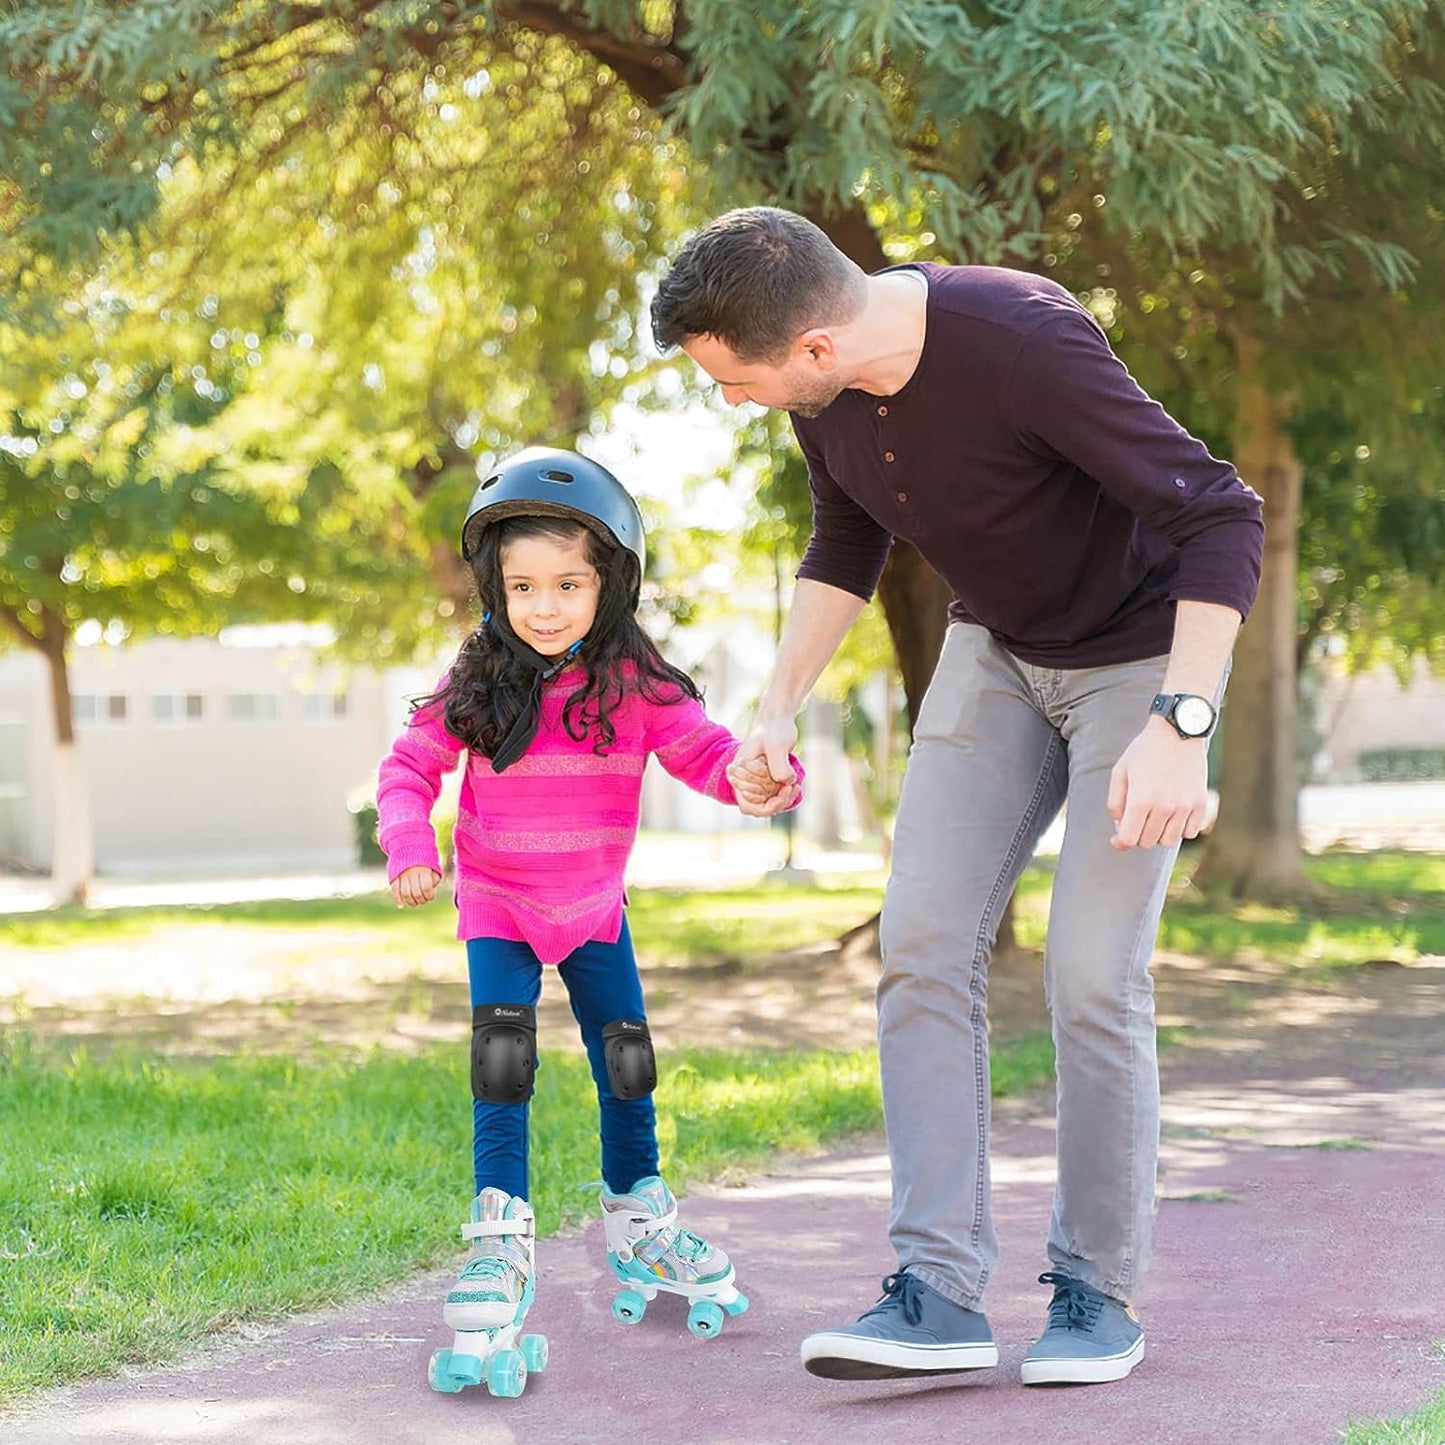 Nattork Adjustable Roller Skates for Kids - Teal